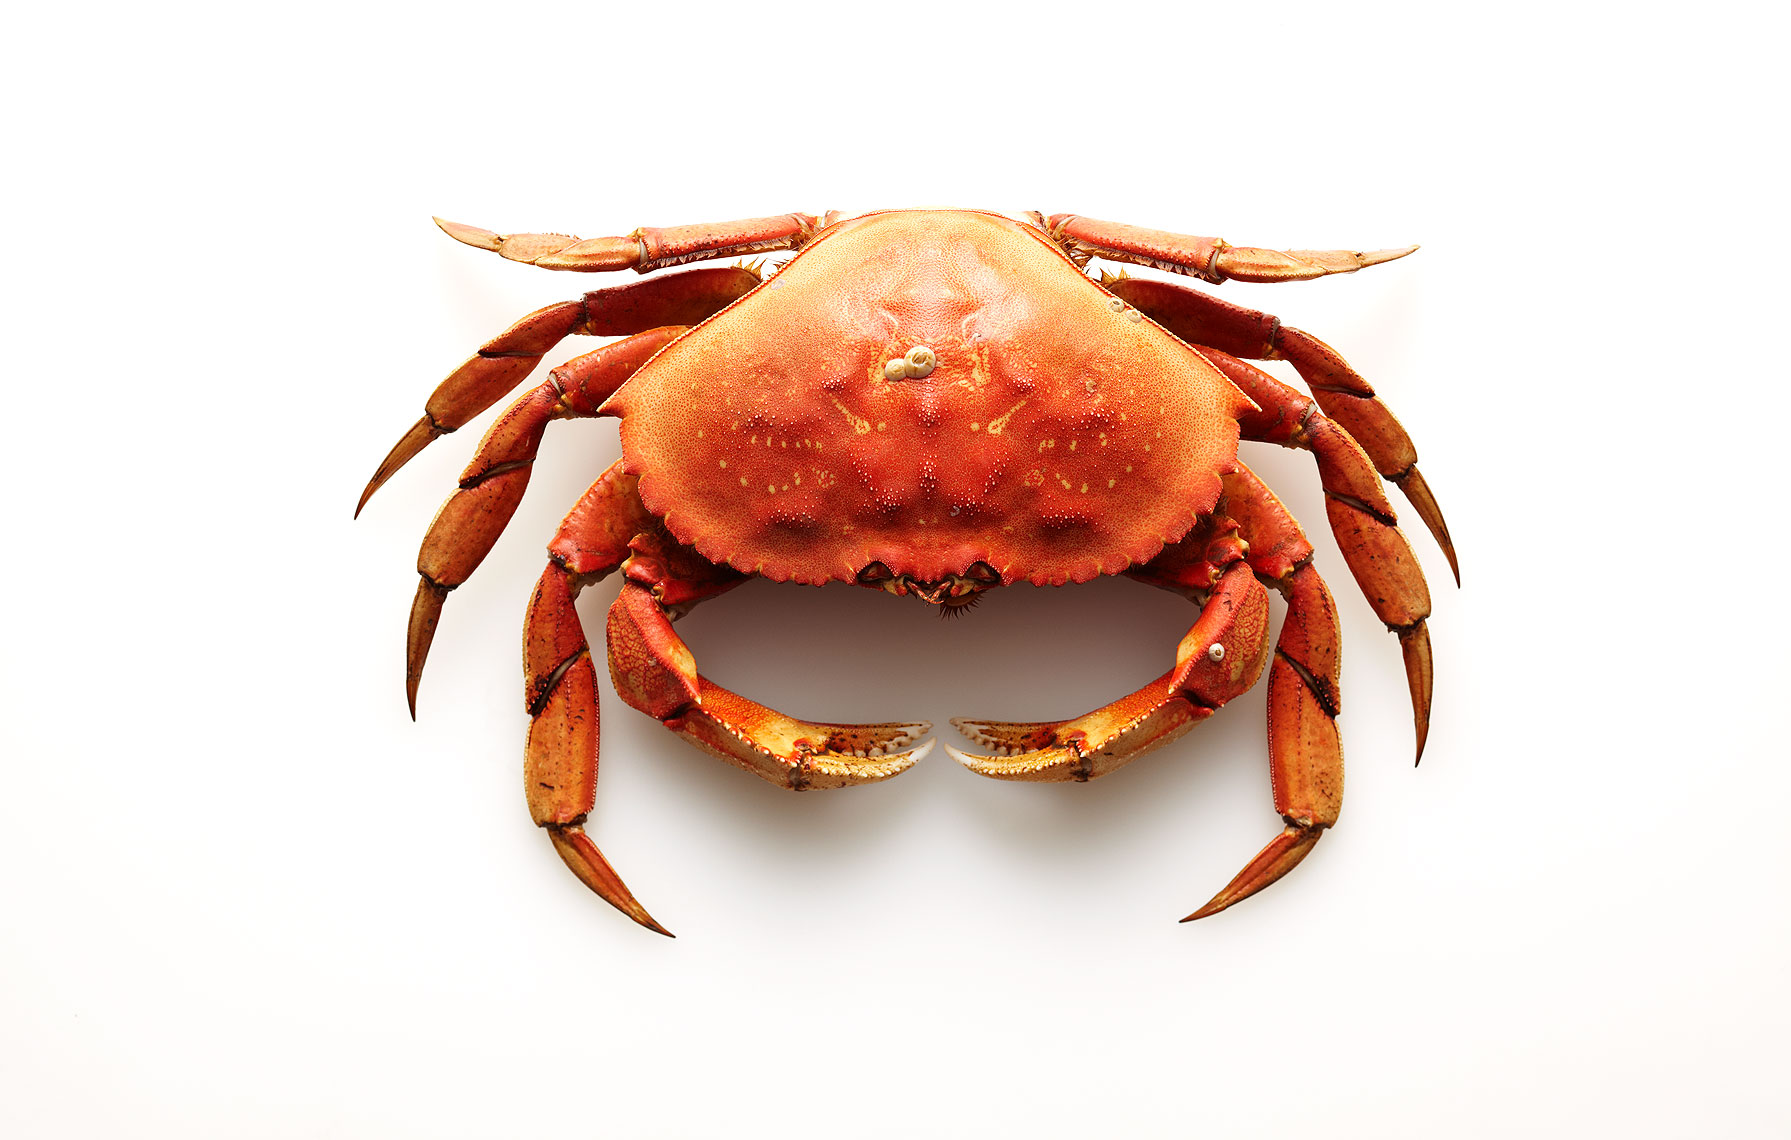 crab261BcolorfixW